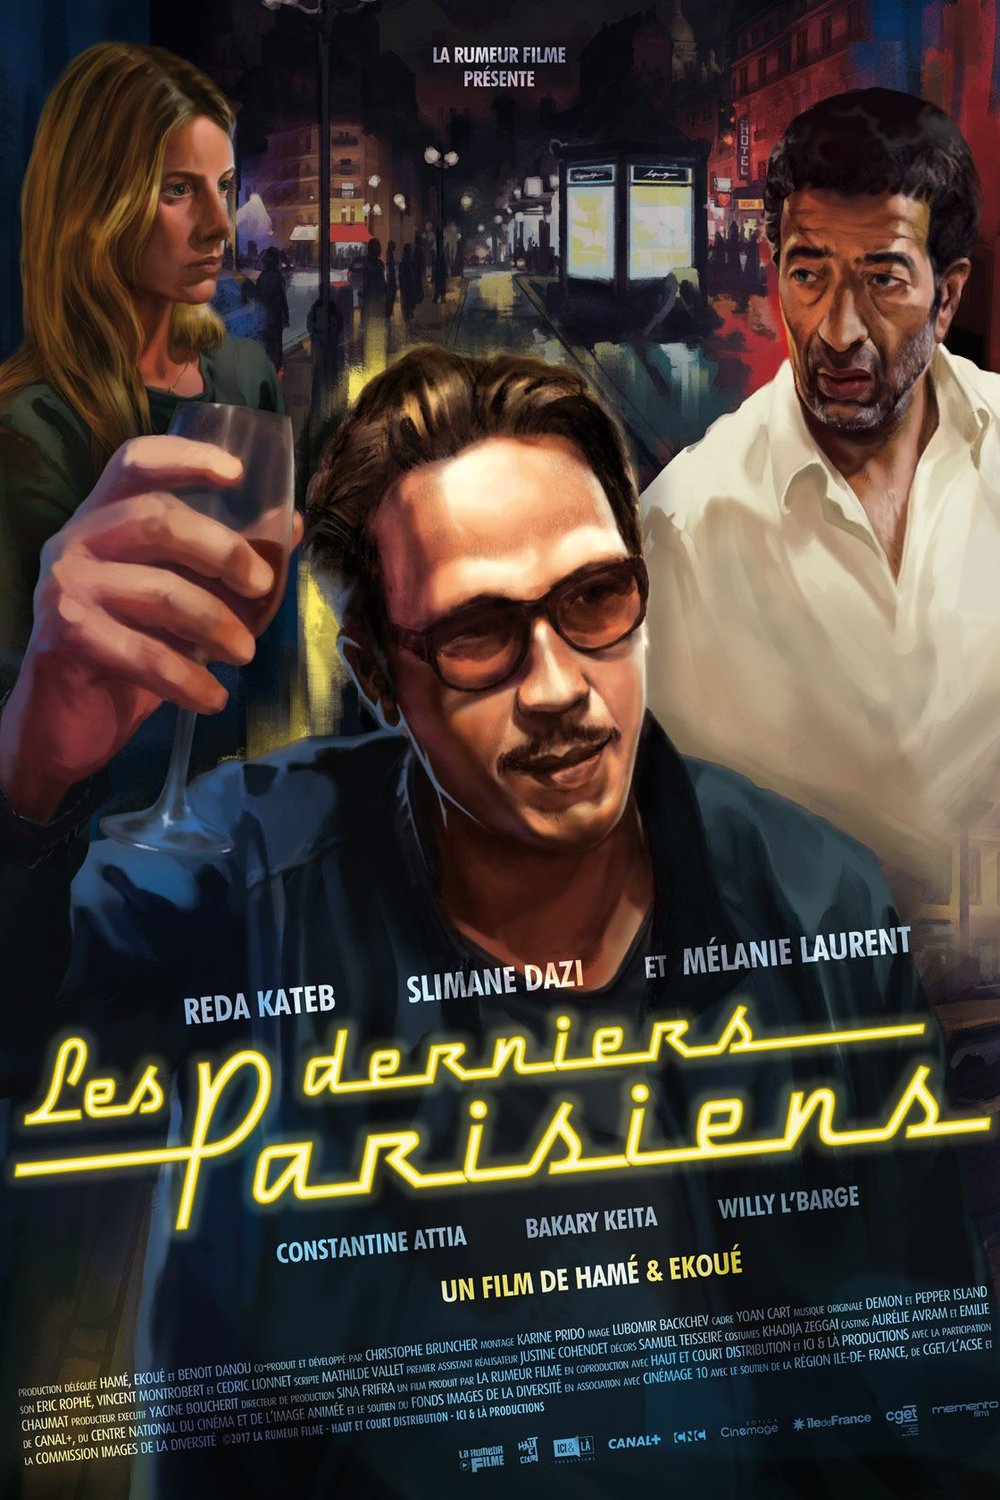 Poster of the movie Les Derniers Parisiens